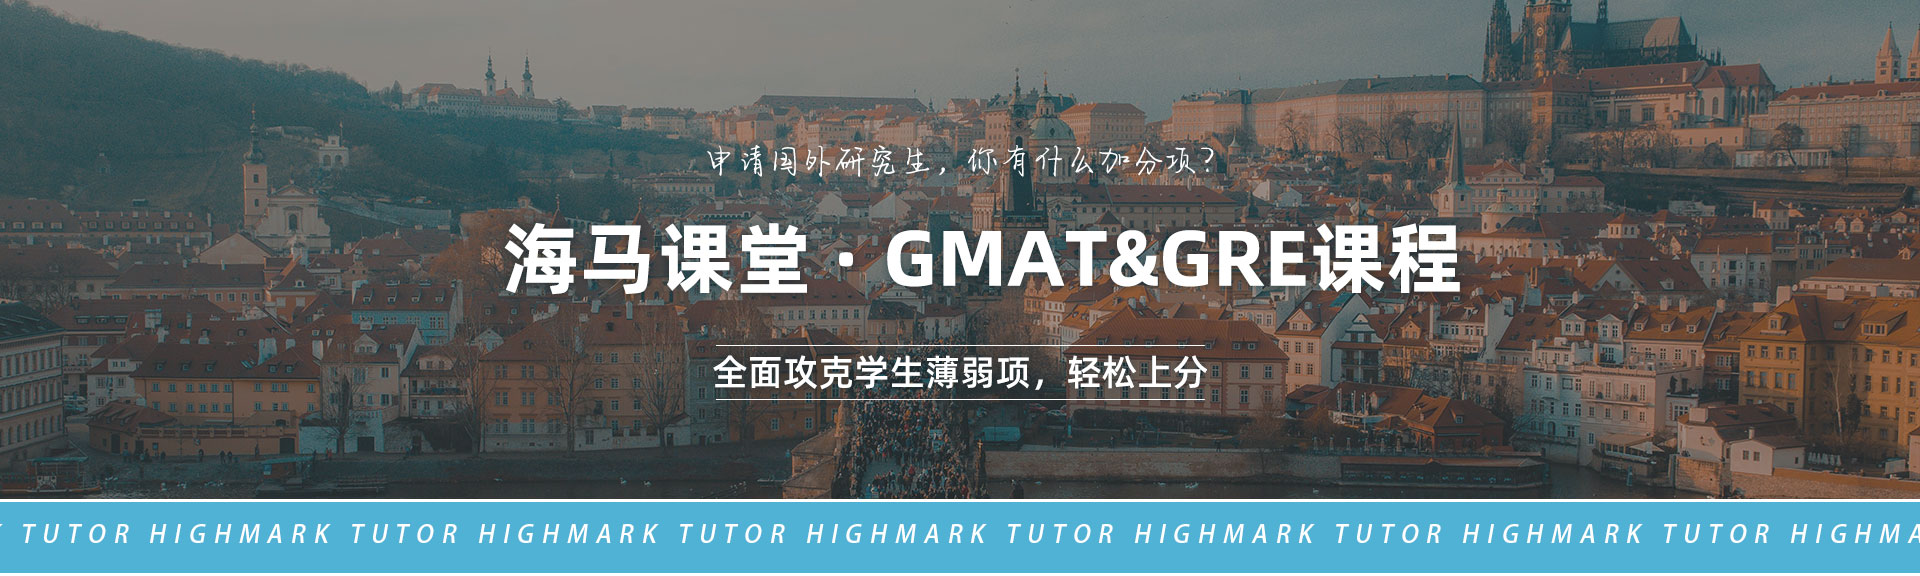 海马课堂·GMAT&GRE课程